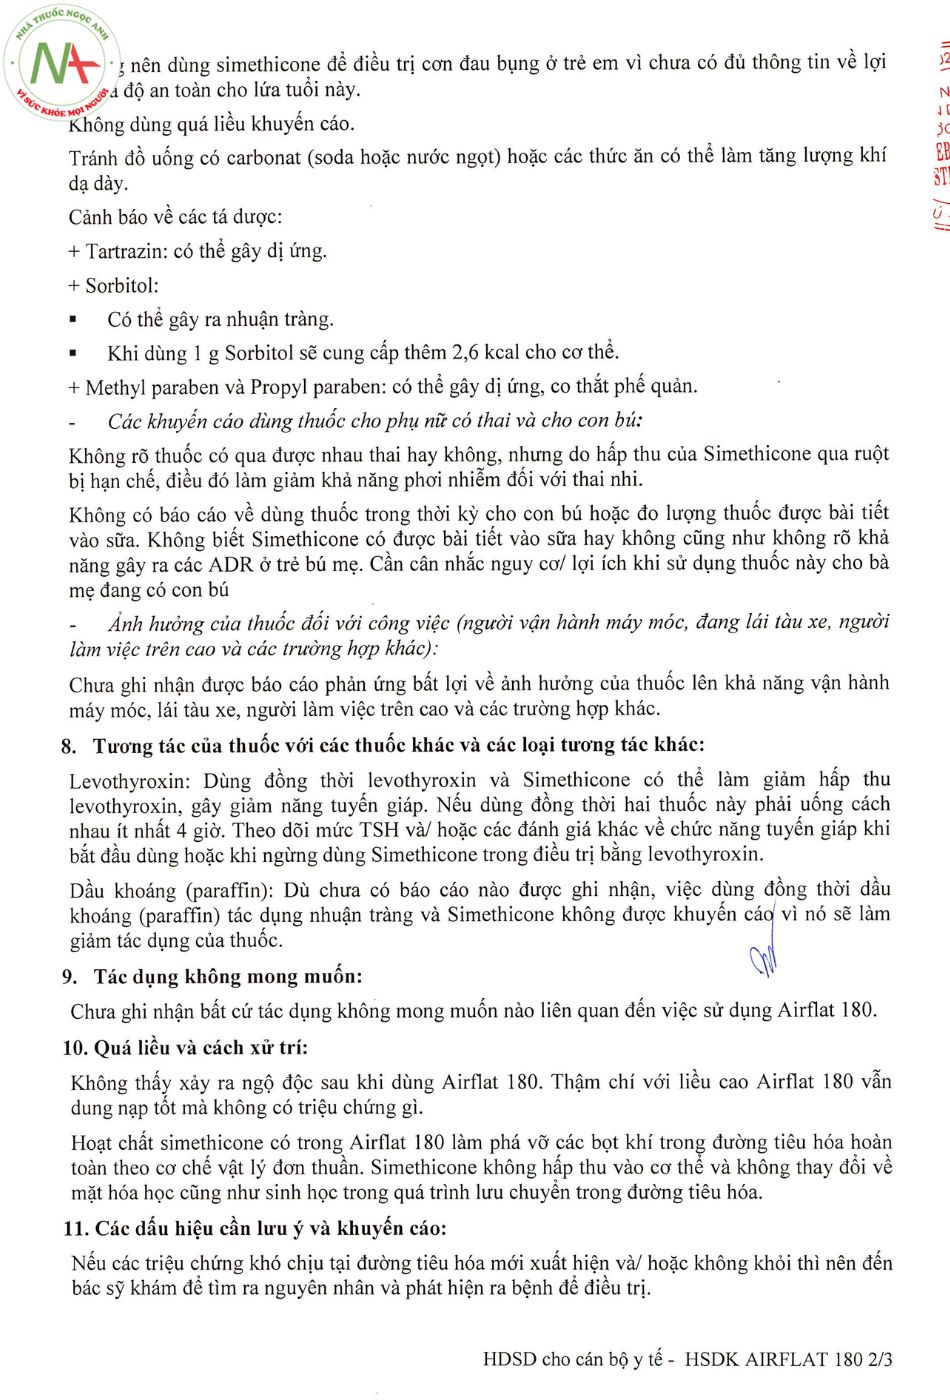 Hướng dẫn sử dụng thuốc Airflat 180 trang 2